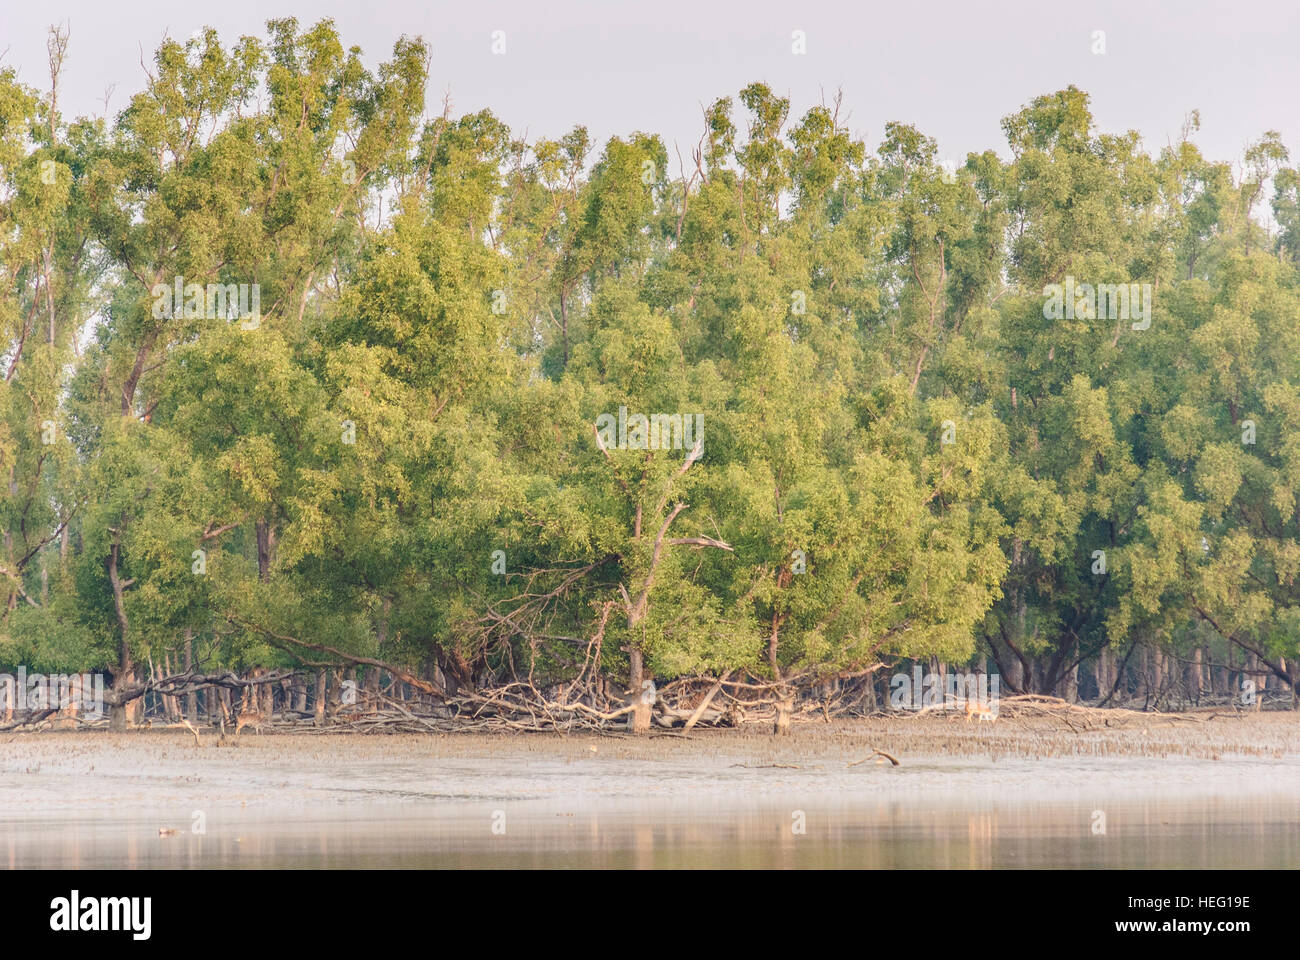 Sundarbans National Park: Axis deer (Axis axis) among Sundari trees, Khulna Division, Bangladesh Stock Photo